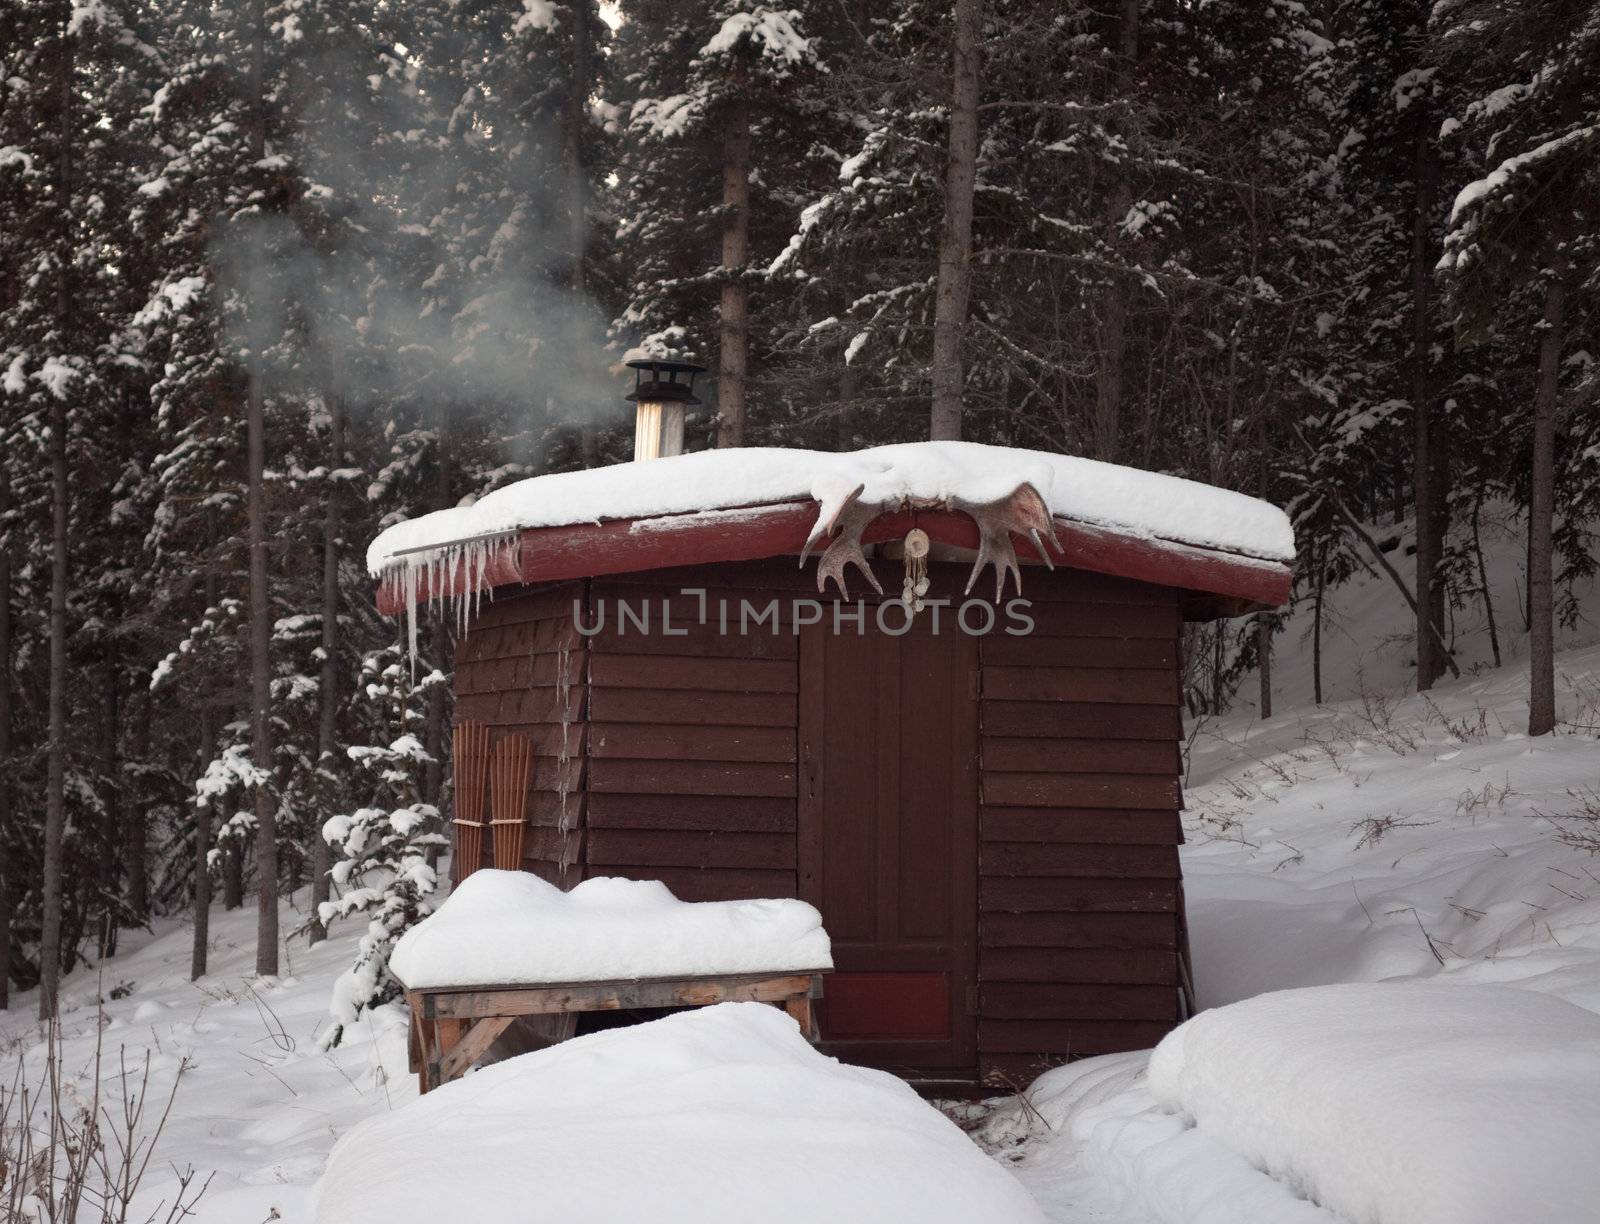 Sauna hut in winter forest by PiLens